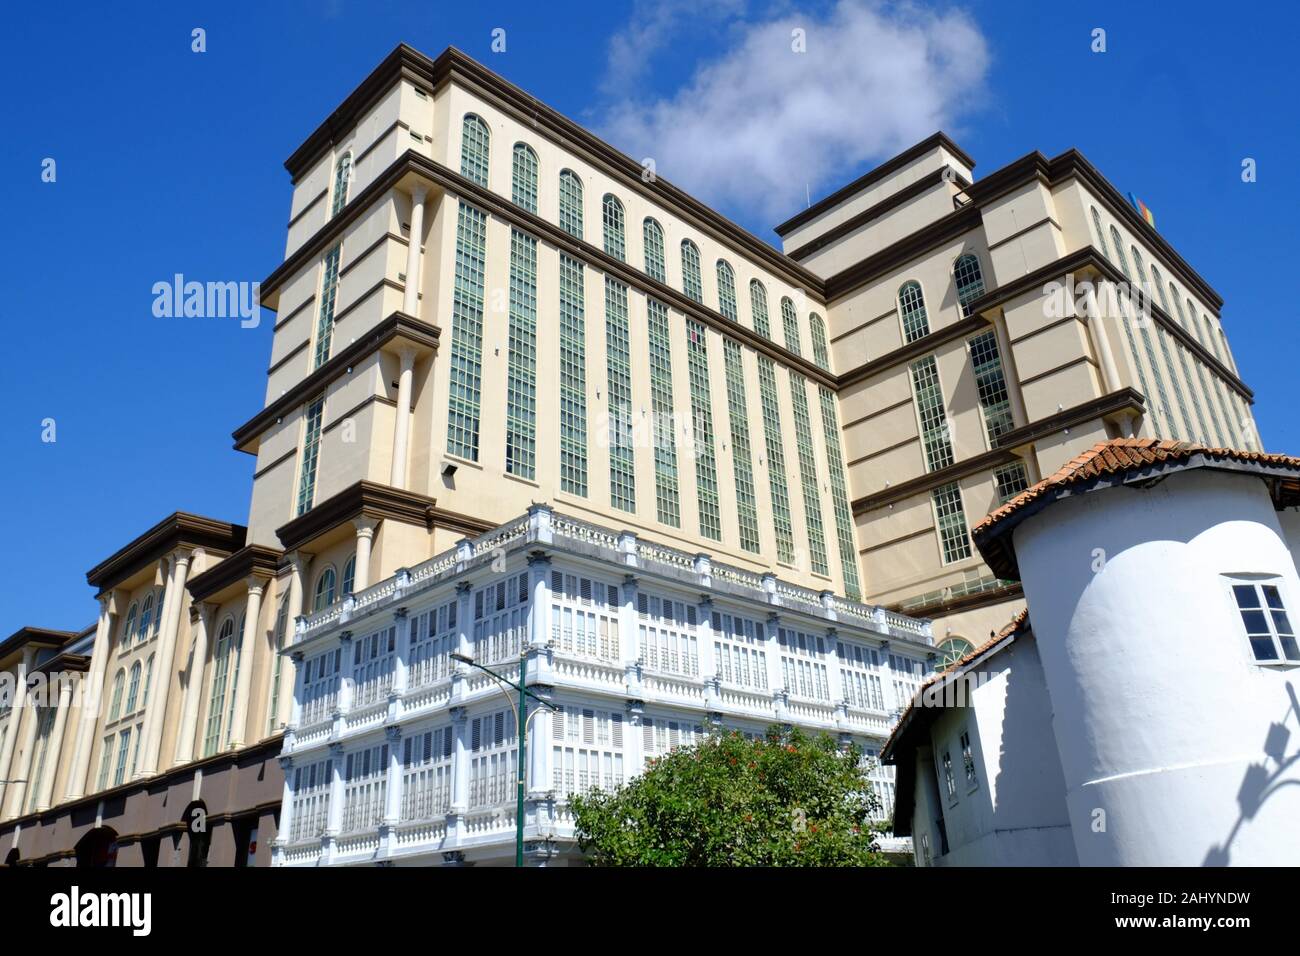 Hotel merdeka kuching sarawak hi-res stock photography and images